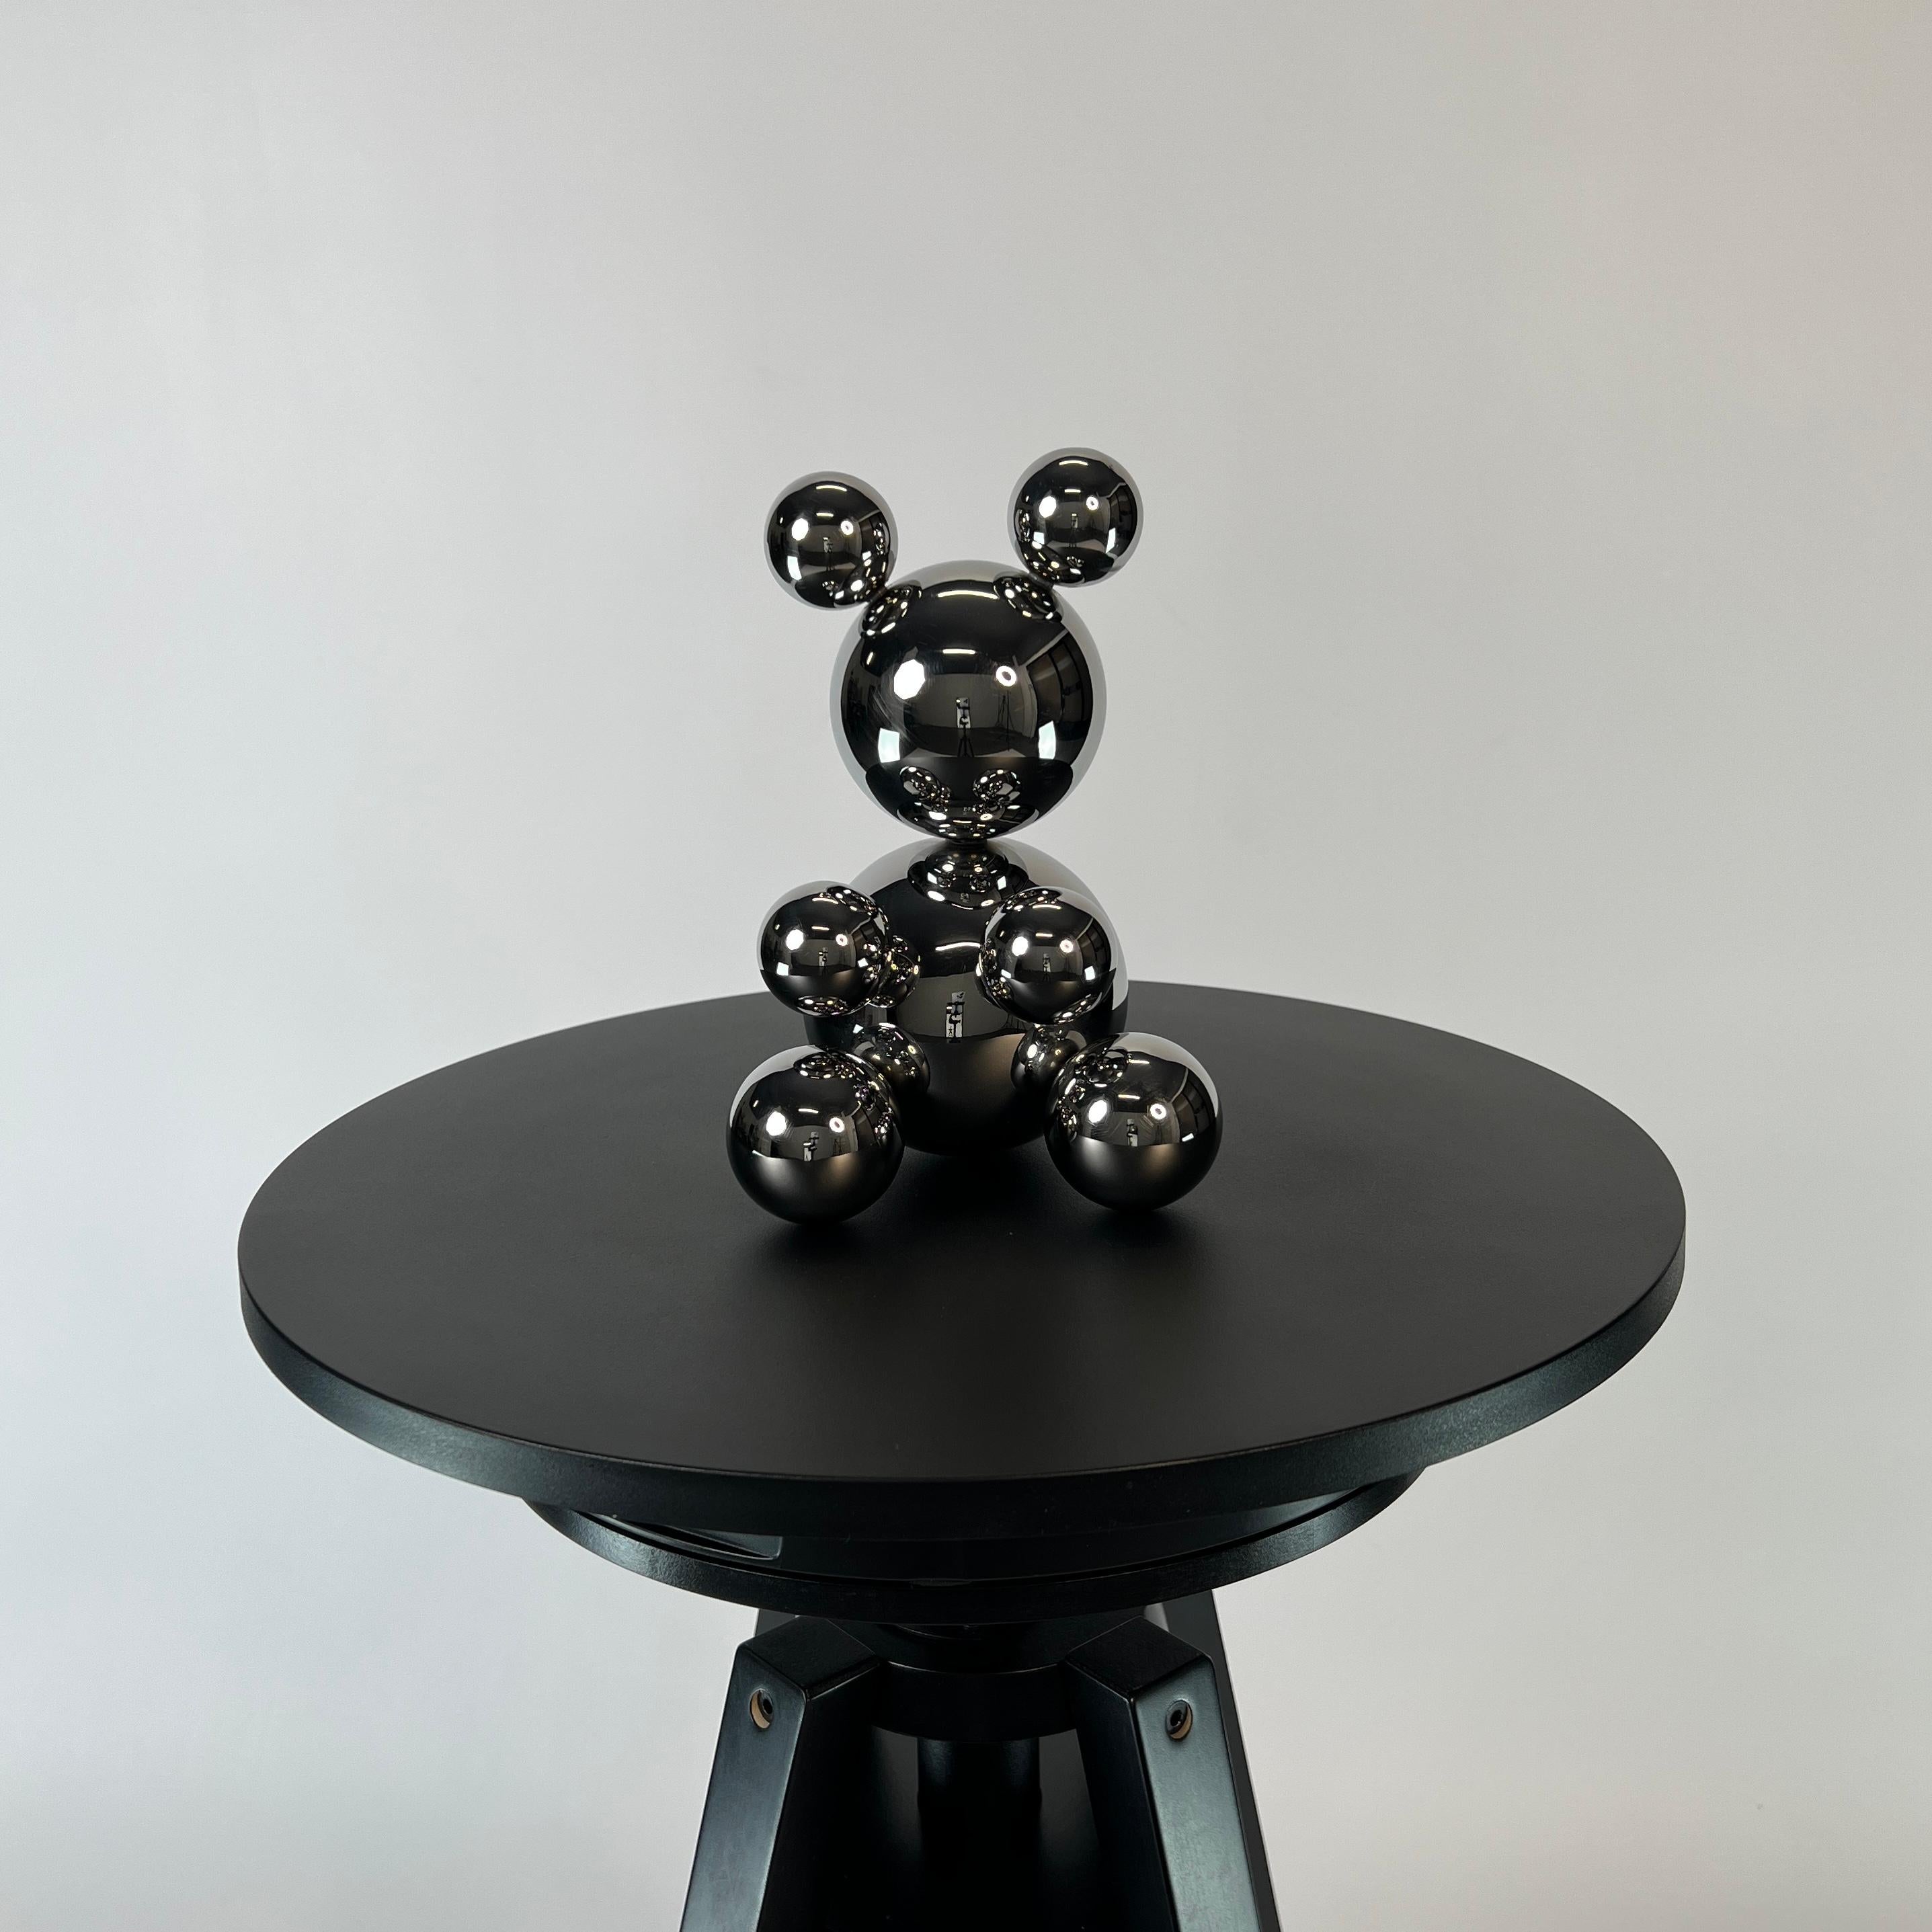 Kleiner Bär aus Edelstahl 'Thomas' Skulptur Minimalistisches Tier